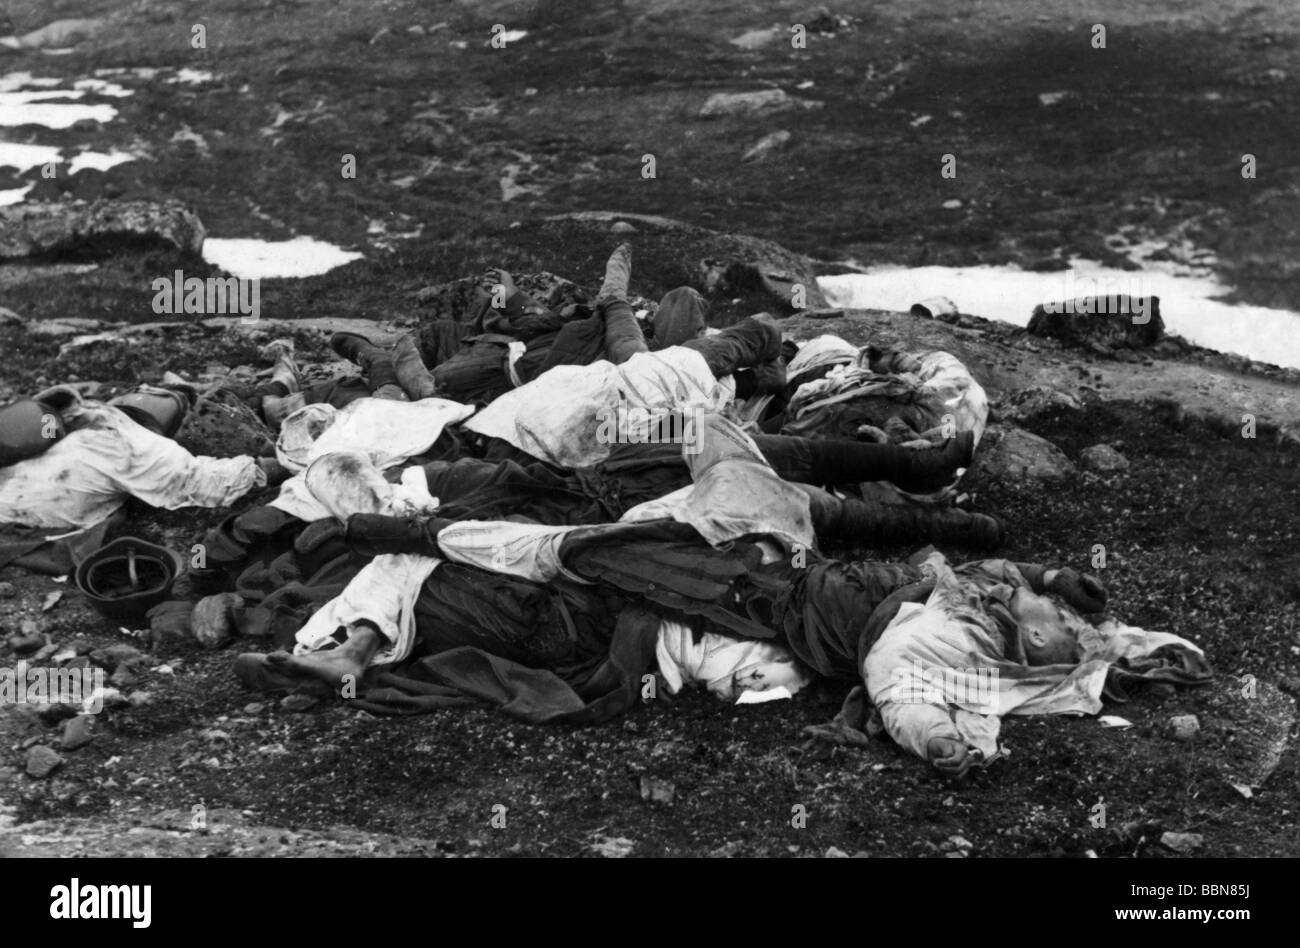 Événements, seconde Guerre mondiale / seconde Guerre mondiale, Russie, soldats tombés / corps morts, soldats soviétiques tombés, vers 1942, Banque D'Images